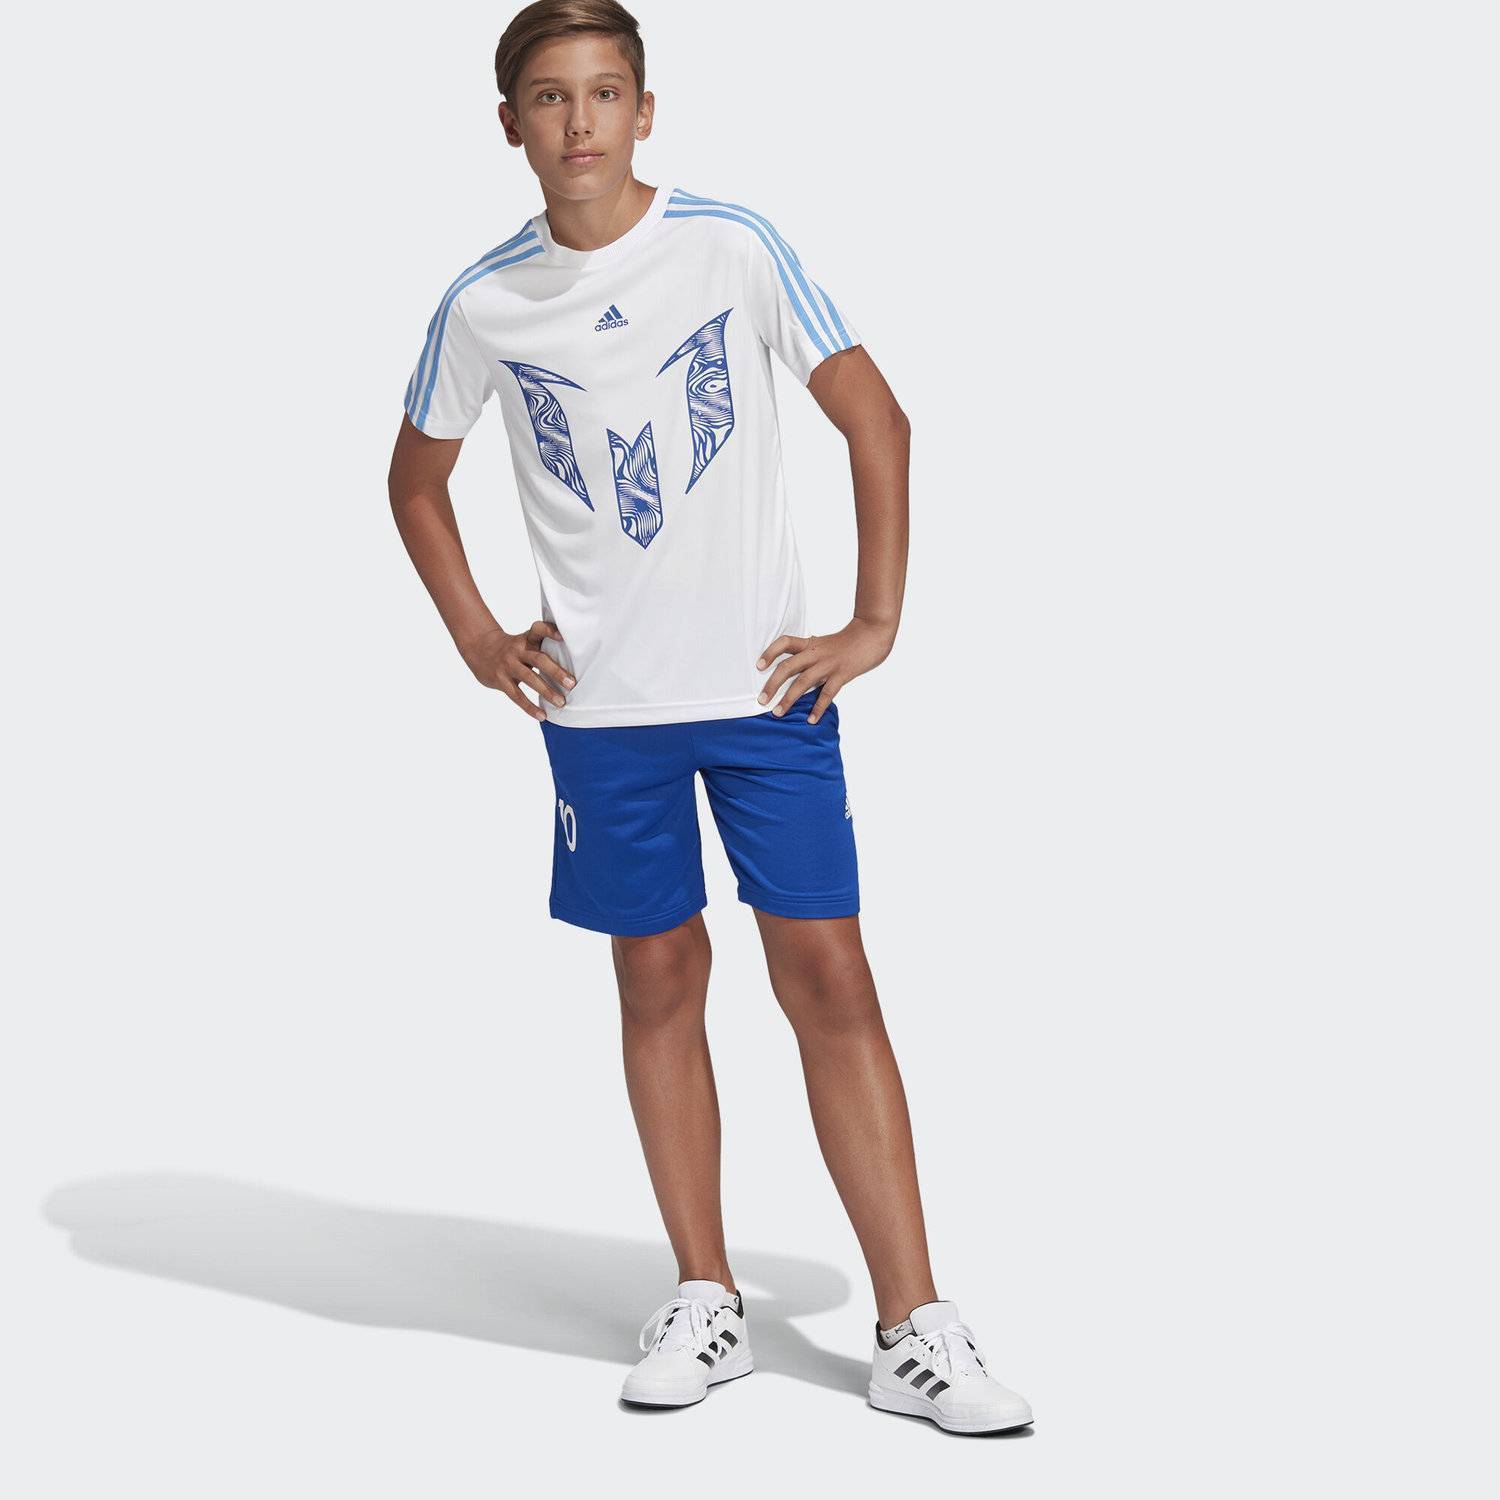 Озон футболки шорты. Шорты adidas Messi мальчиков. Adidas Sportswear шорты и футболка комплект. Шорты adidas и футболка адидас. Шорты и футболка адидас мужские комплект.